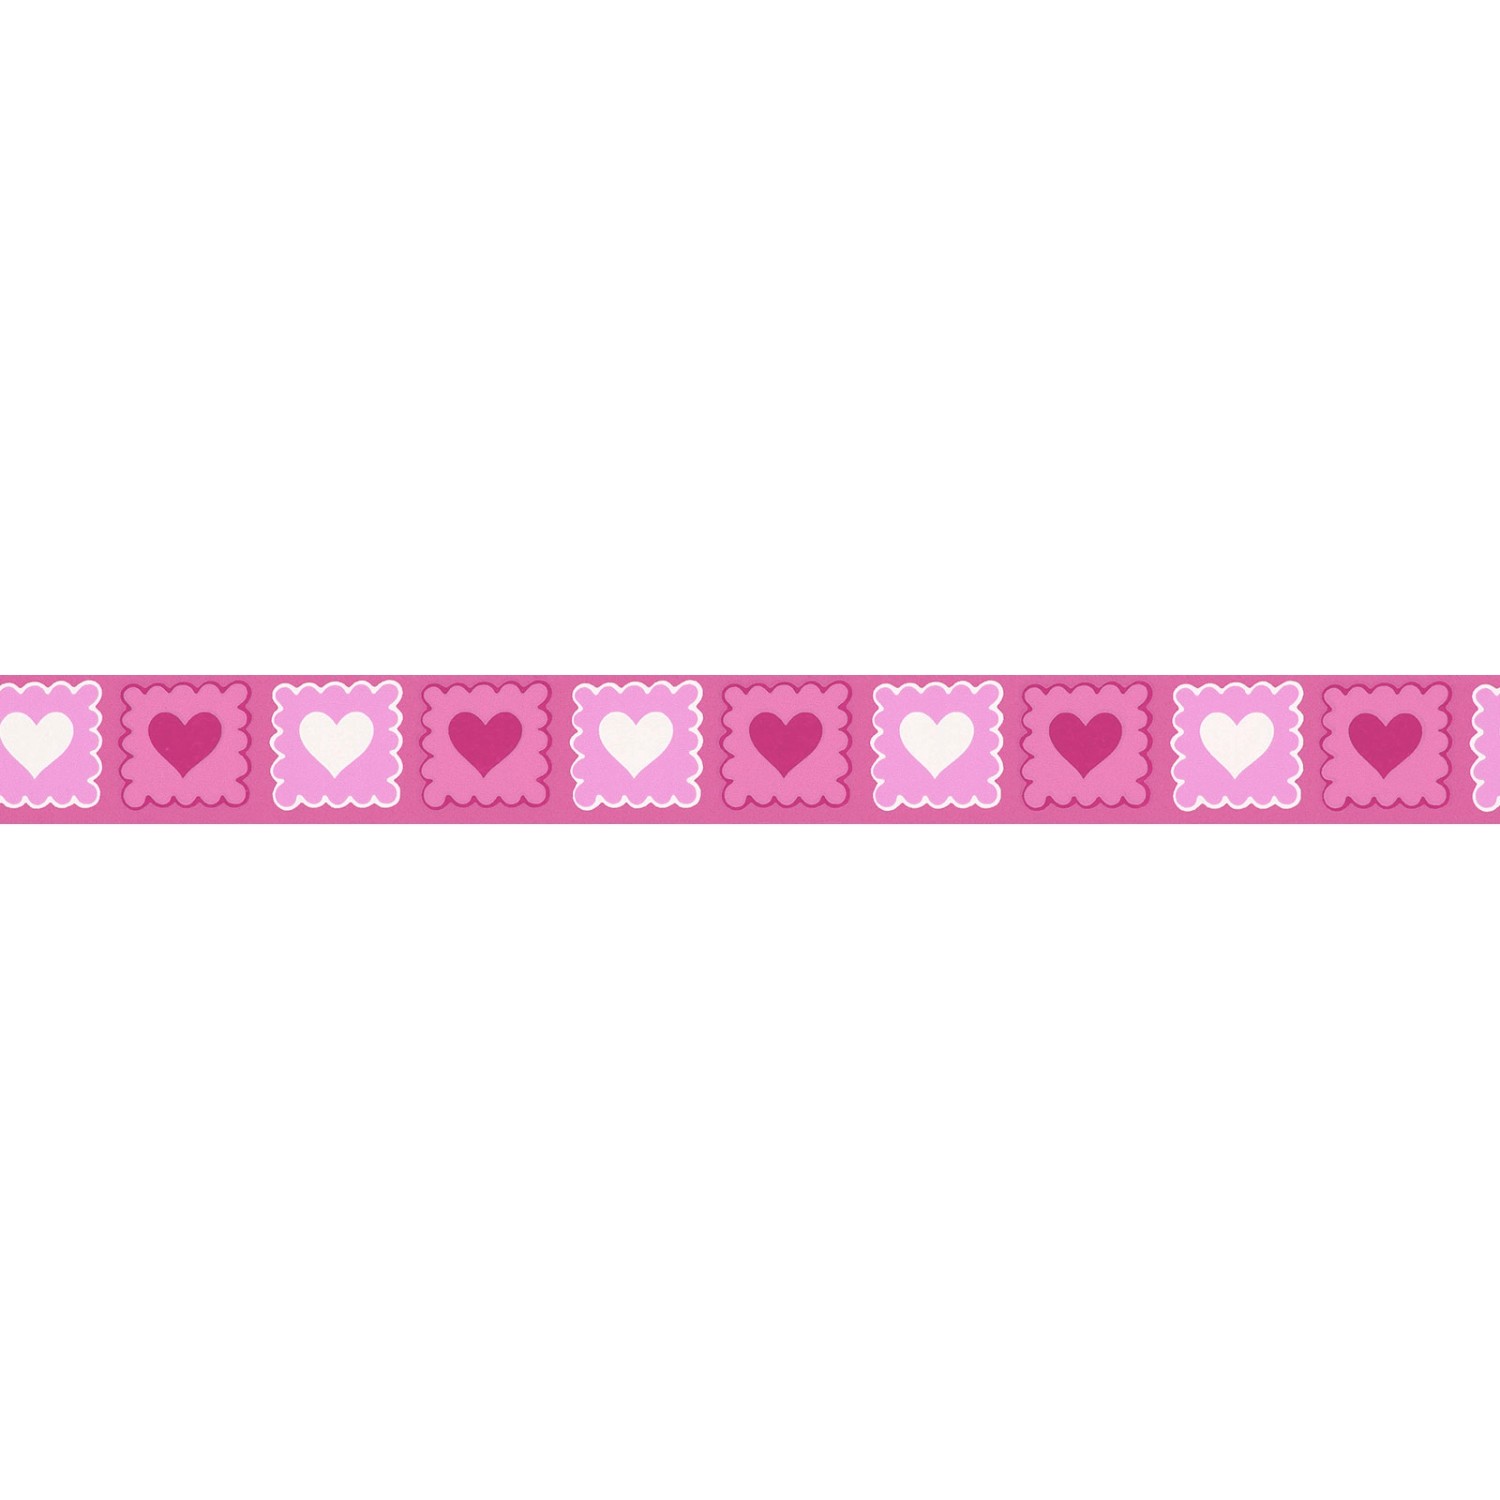 Bricoflor Kinderzimmer Wandbordüre in Pink Herz Tapeten Bordüre Ideal für Mädchenzimmer Schmale Tapetenbordüre Selbstklebend aus Vlies und Vinyl 30 von Bricoflor